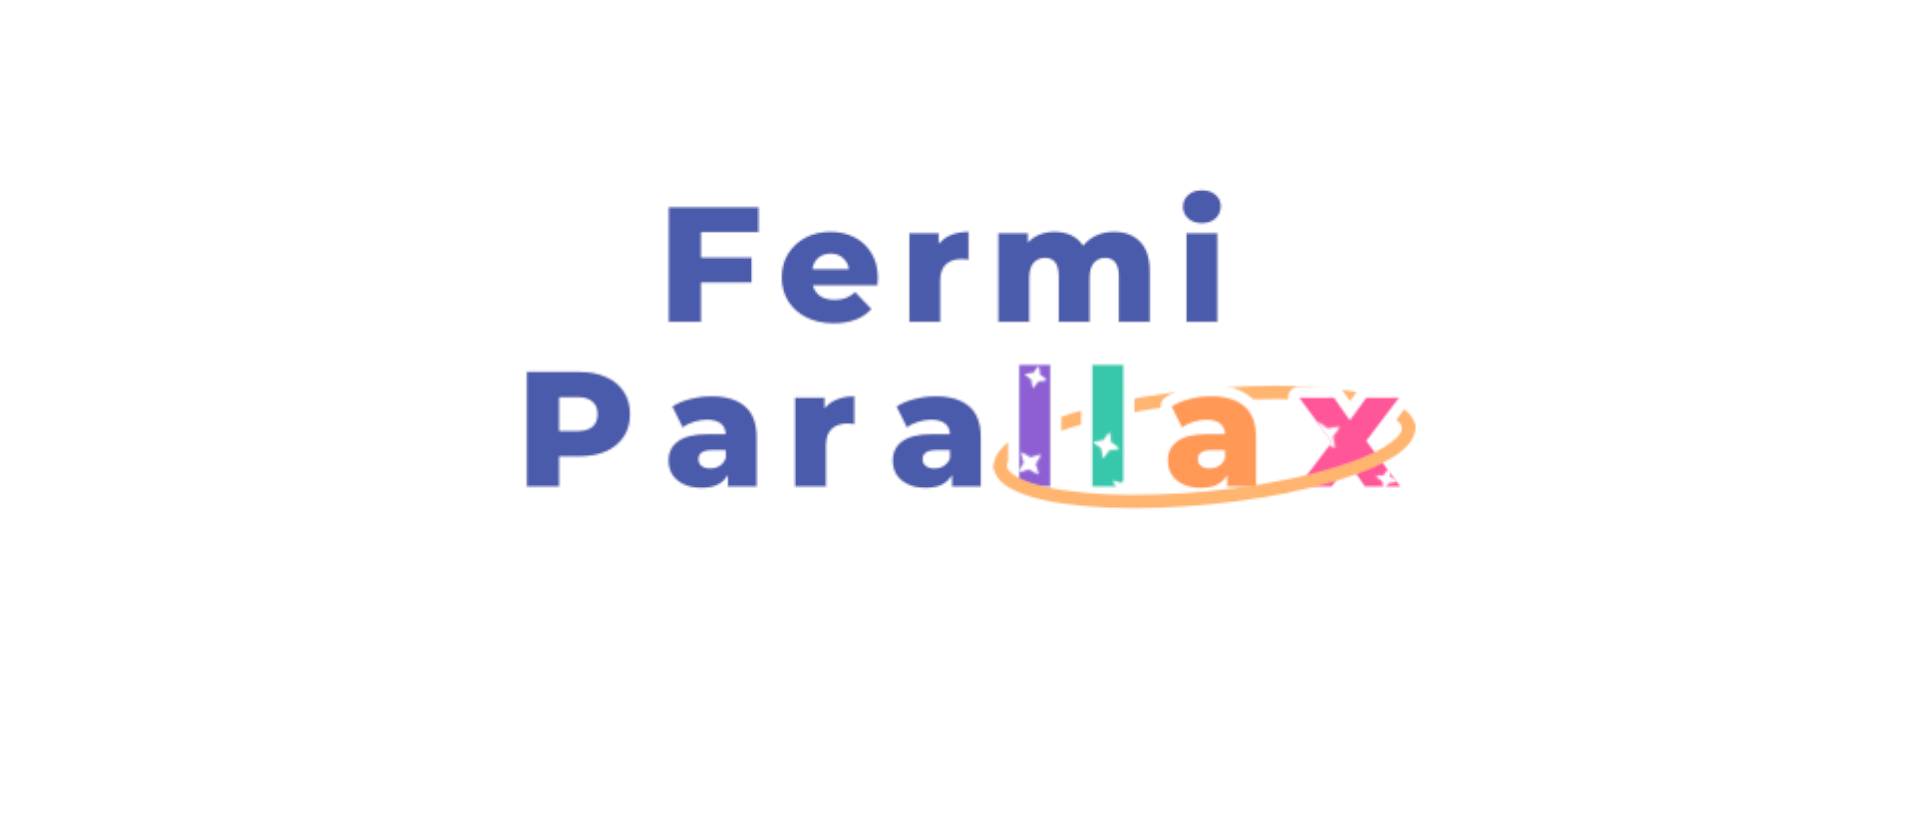 Fermi Parallax